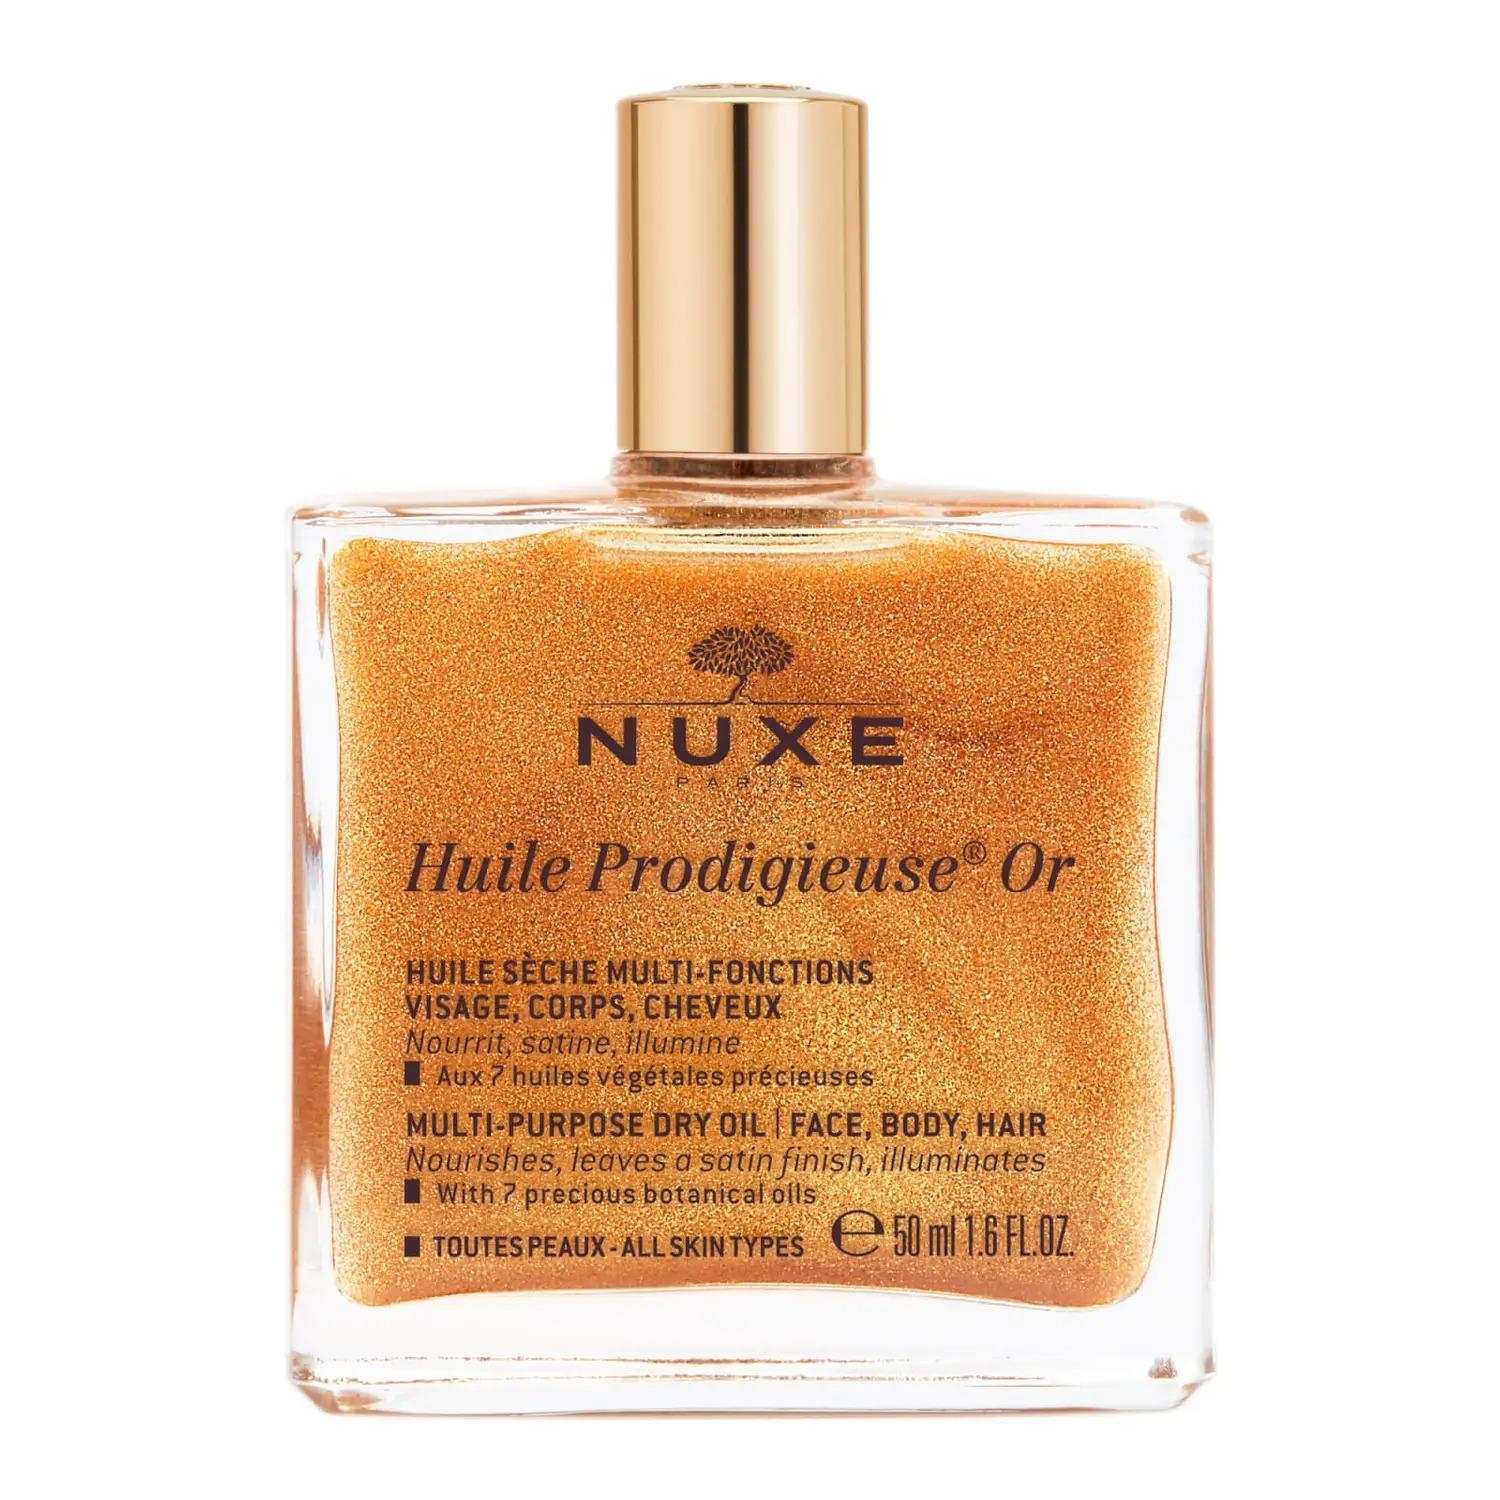 Nuxe Huile Prodigieuse или многофункциональное сухое масло 50 мл nuxe цветочное сухое масло huile prodigieuse florale 50 мл nuxe prodigieuse